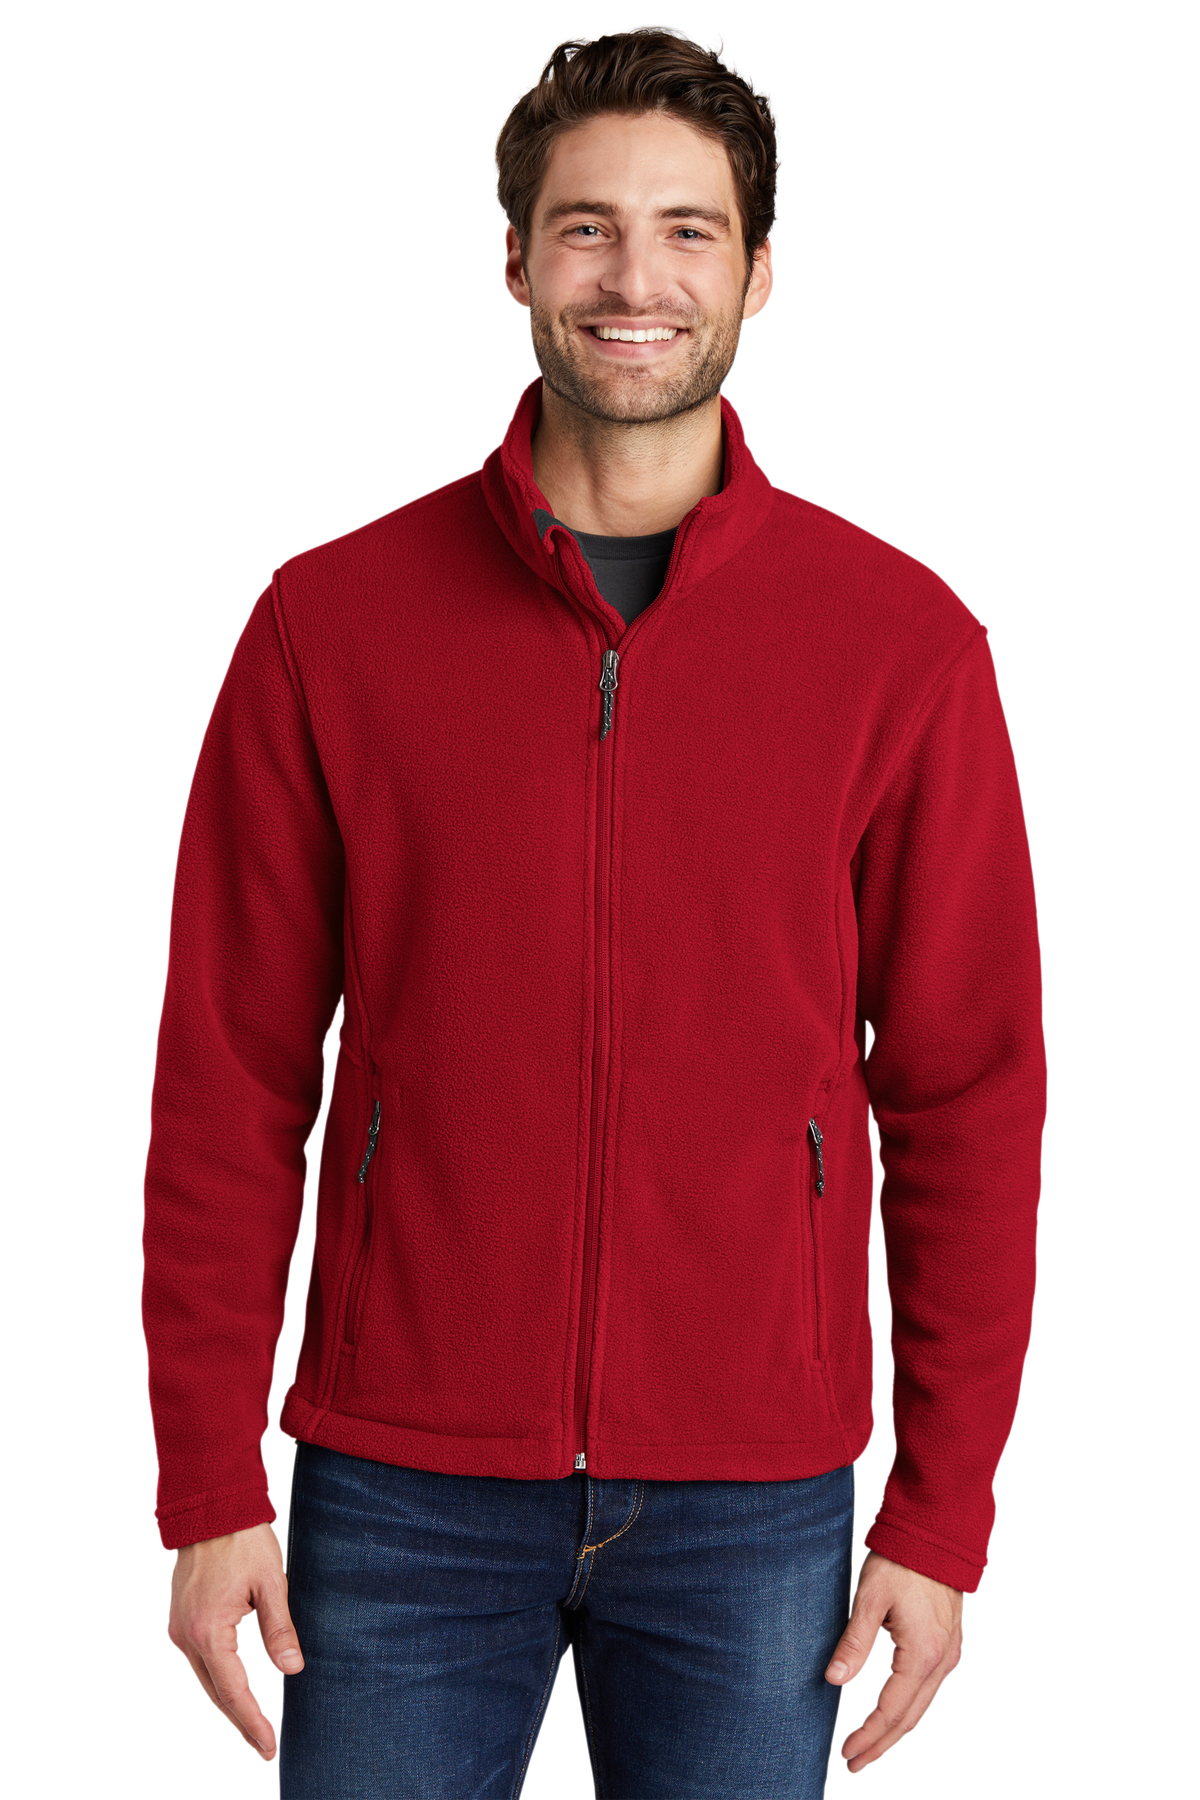 Port Authority Embroidered Men's Value Fleece Jacket | Fleece Apparel ...